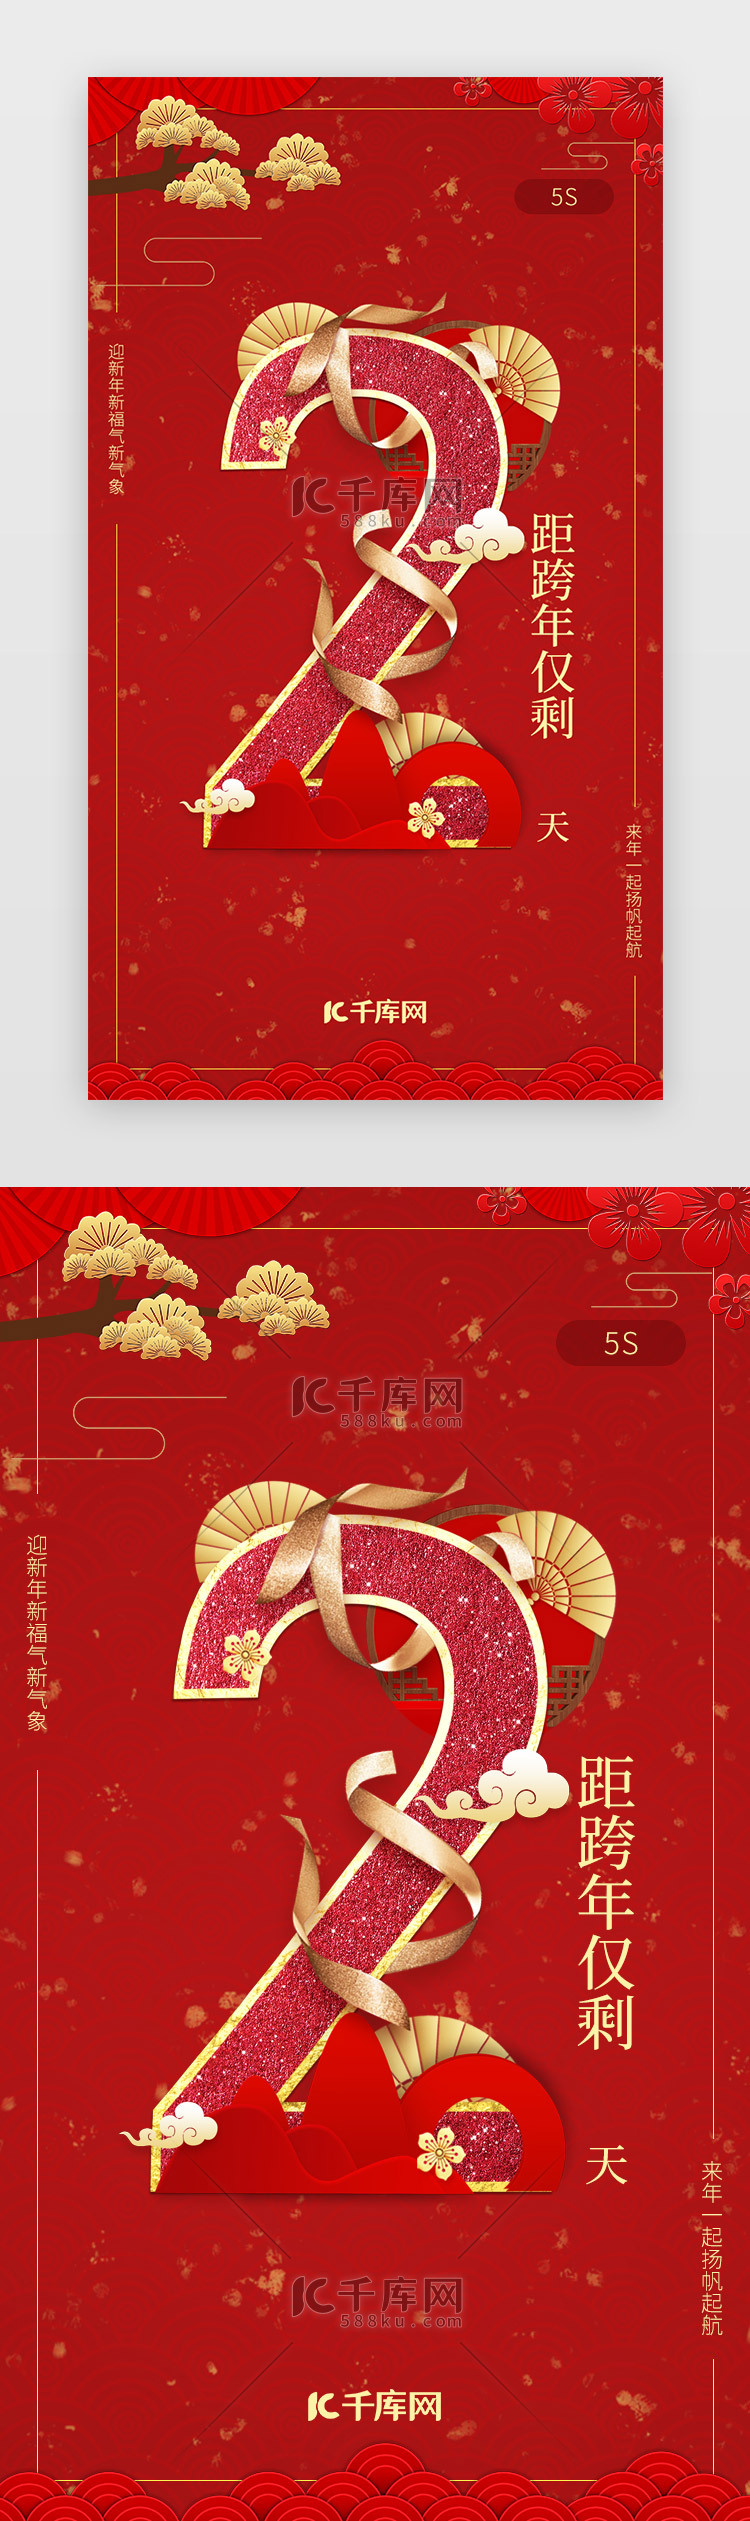 红色新年春节跨年倒计时闪屏启动页